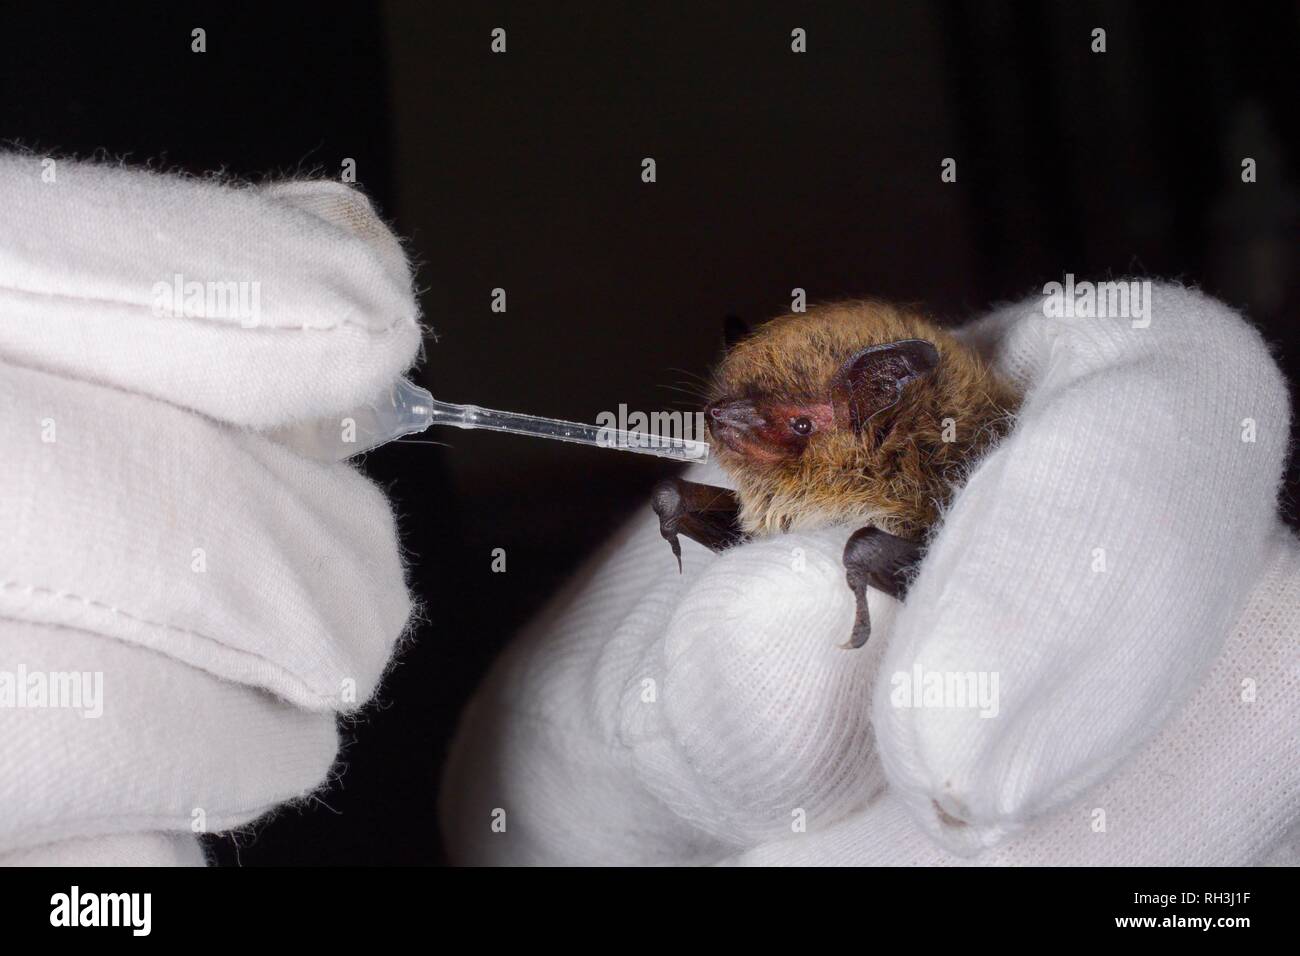 Whiskered bat (Myotis mystacinus) dato acqua da una pipetta da Samantha Pickering nella bat rescue center a casa sua, Barnstaple, Devon, Regno Unito Foto Stock